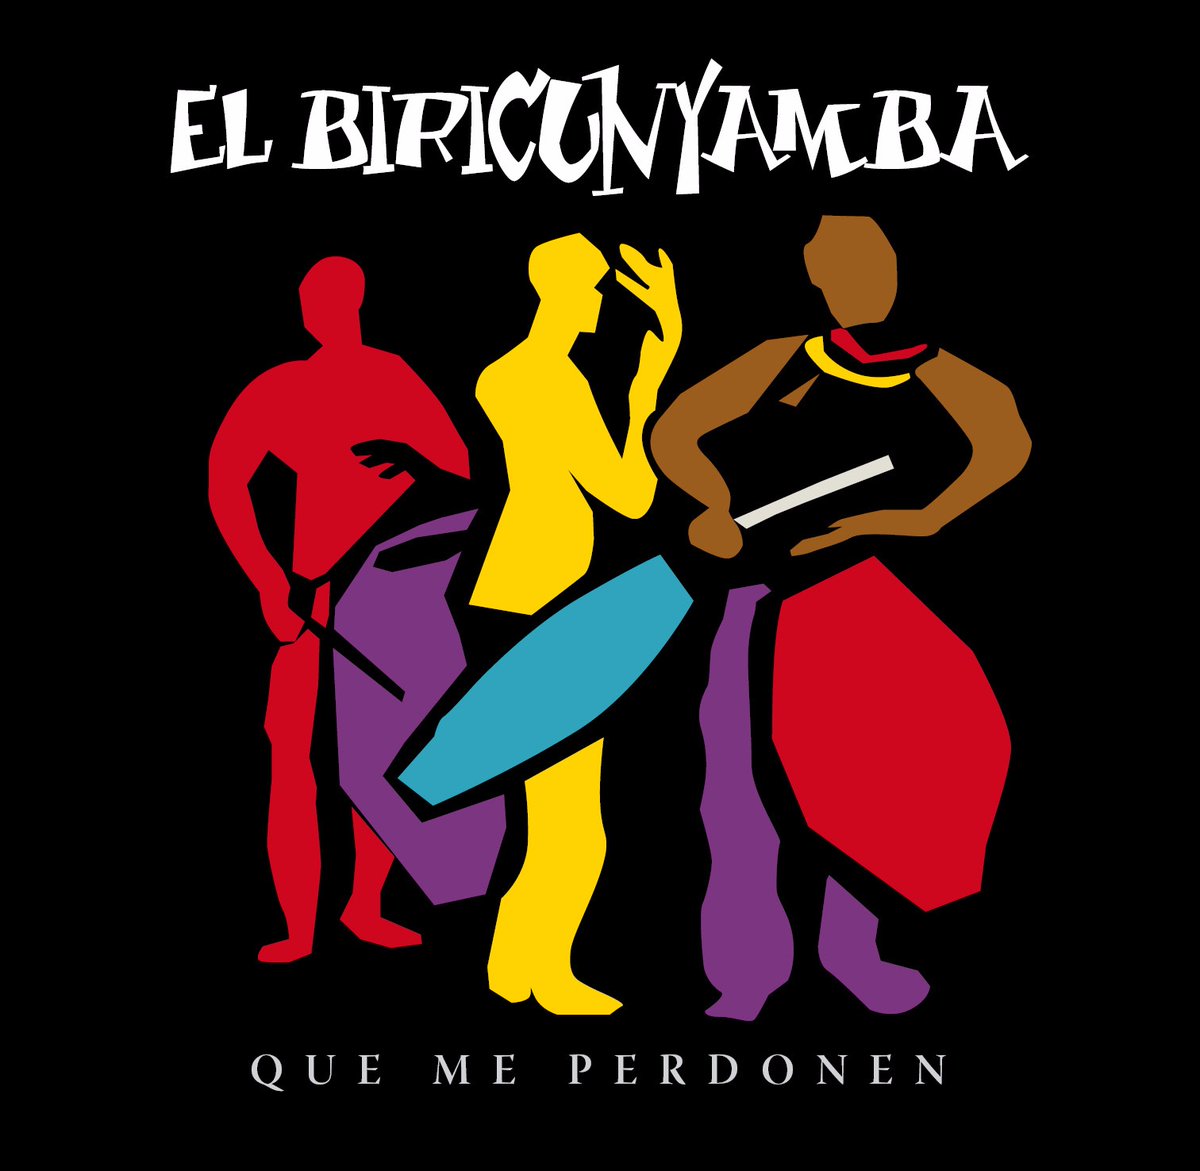 + Info del CD Que me perdonen de El Biricunyamba Candombe ...